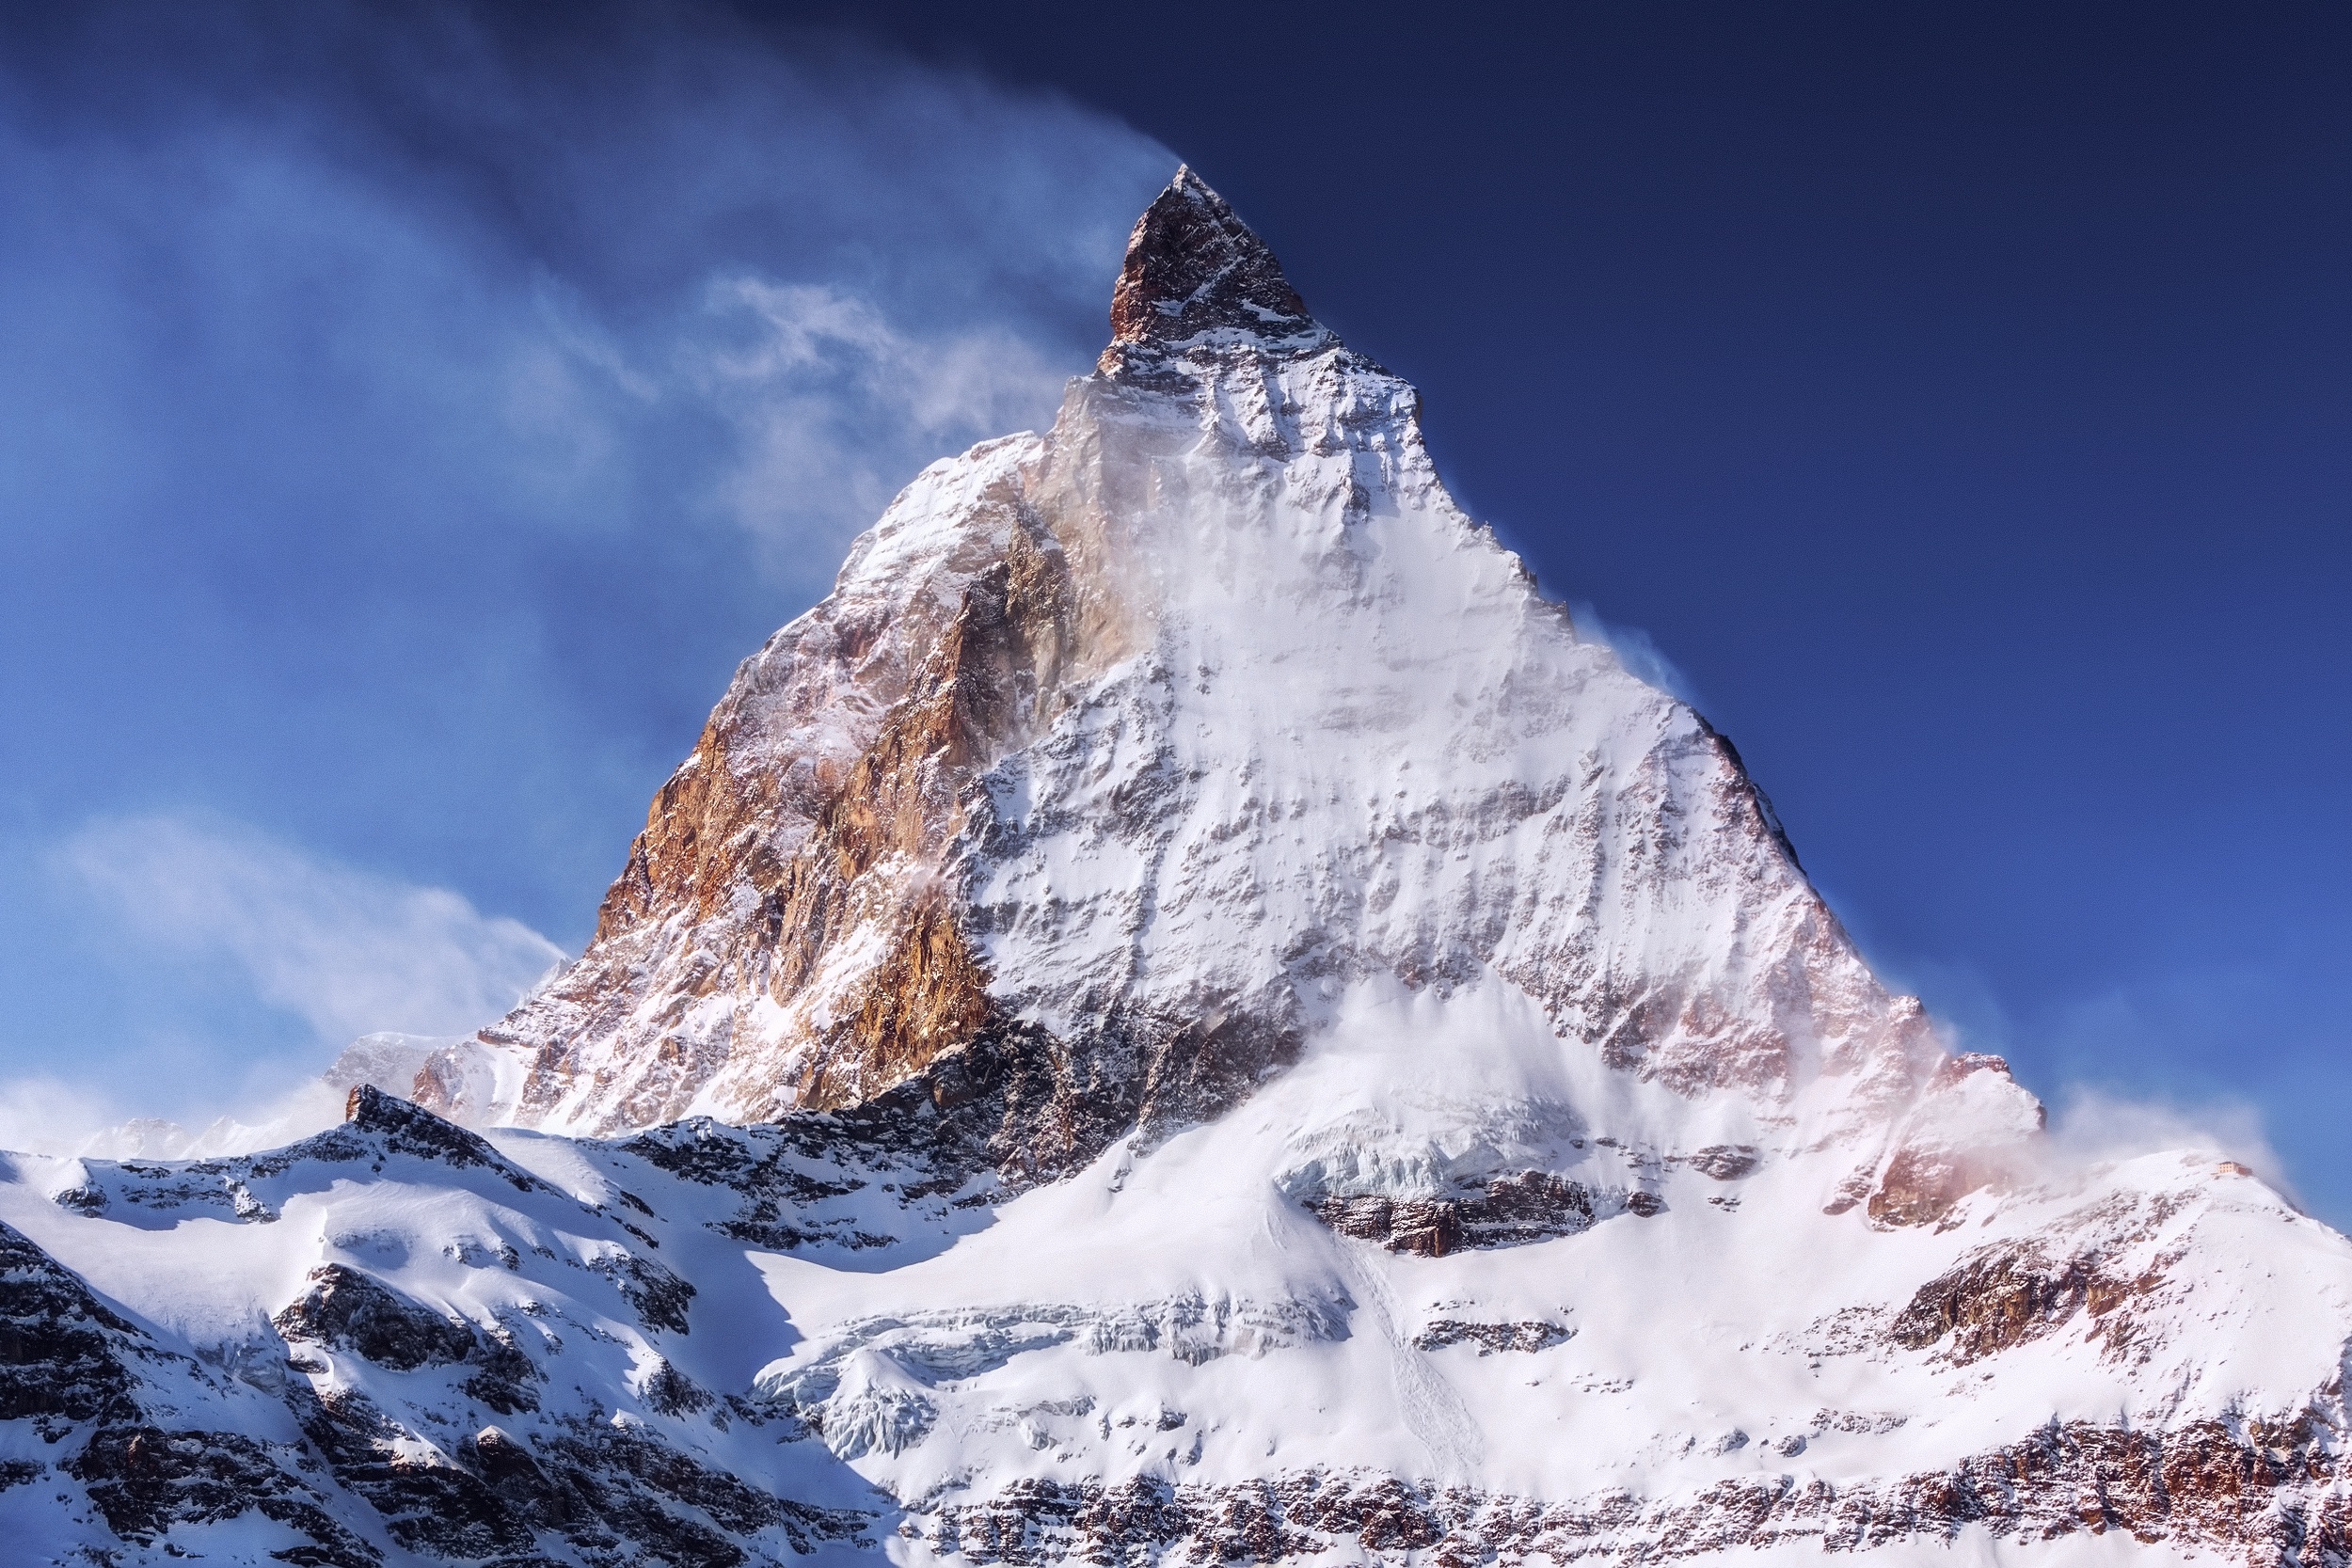 General 2500x1667 nature mountains Matterhorn